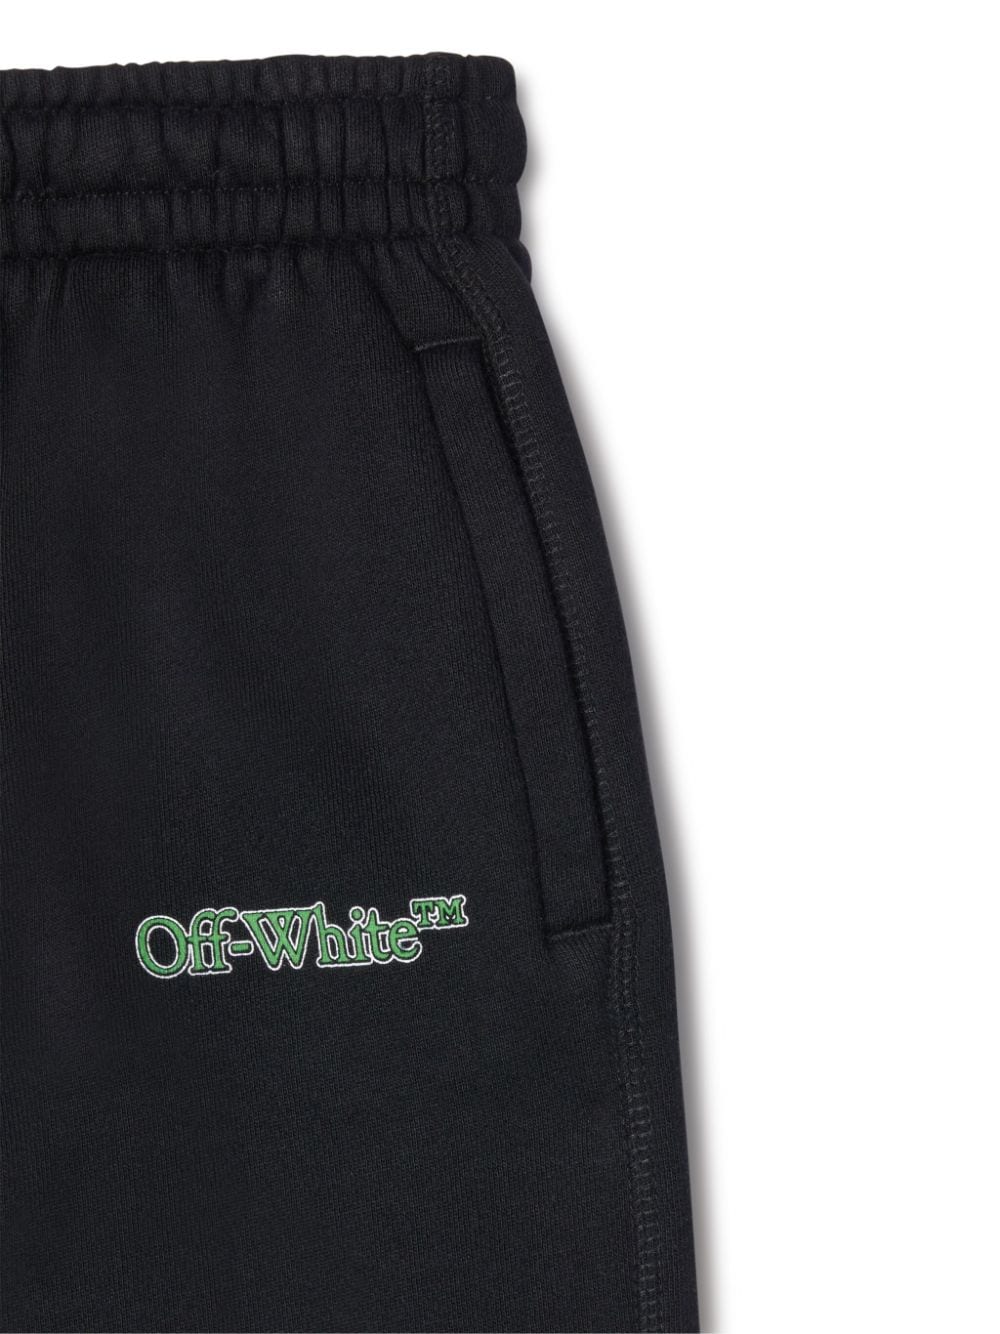 Pantalone sportivo nero per bambino con logo verde